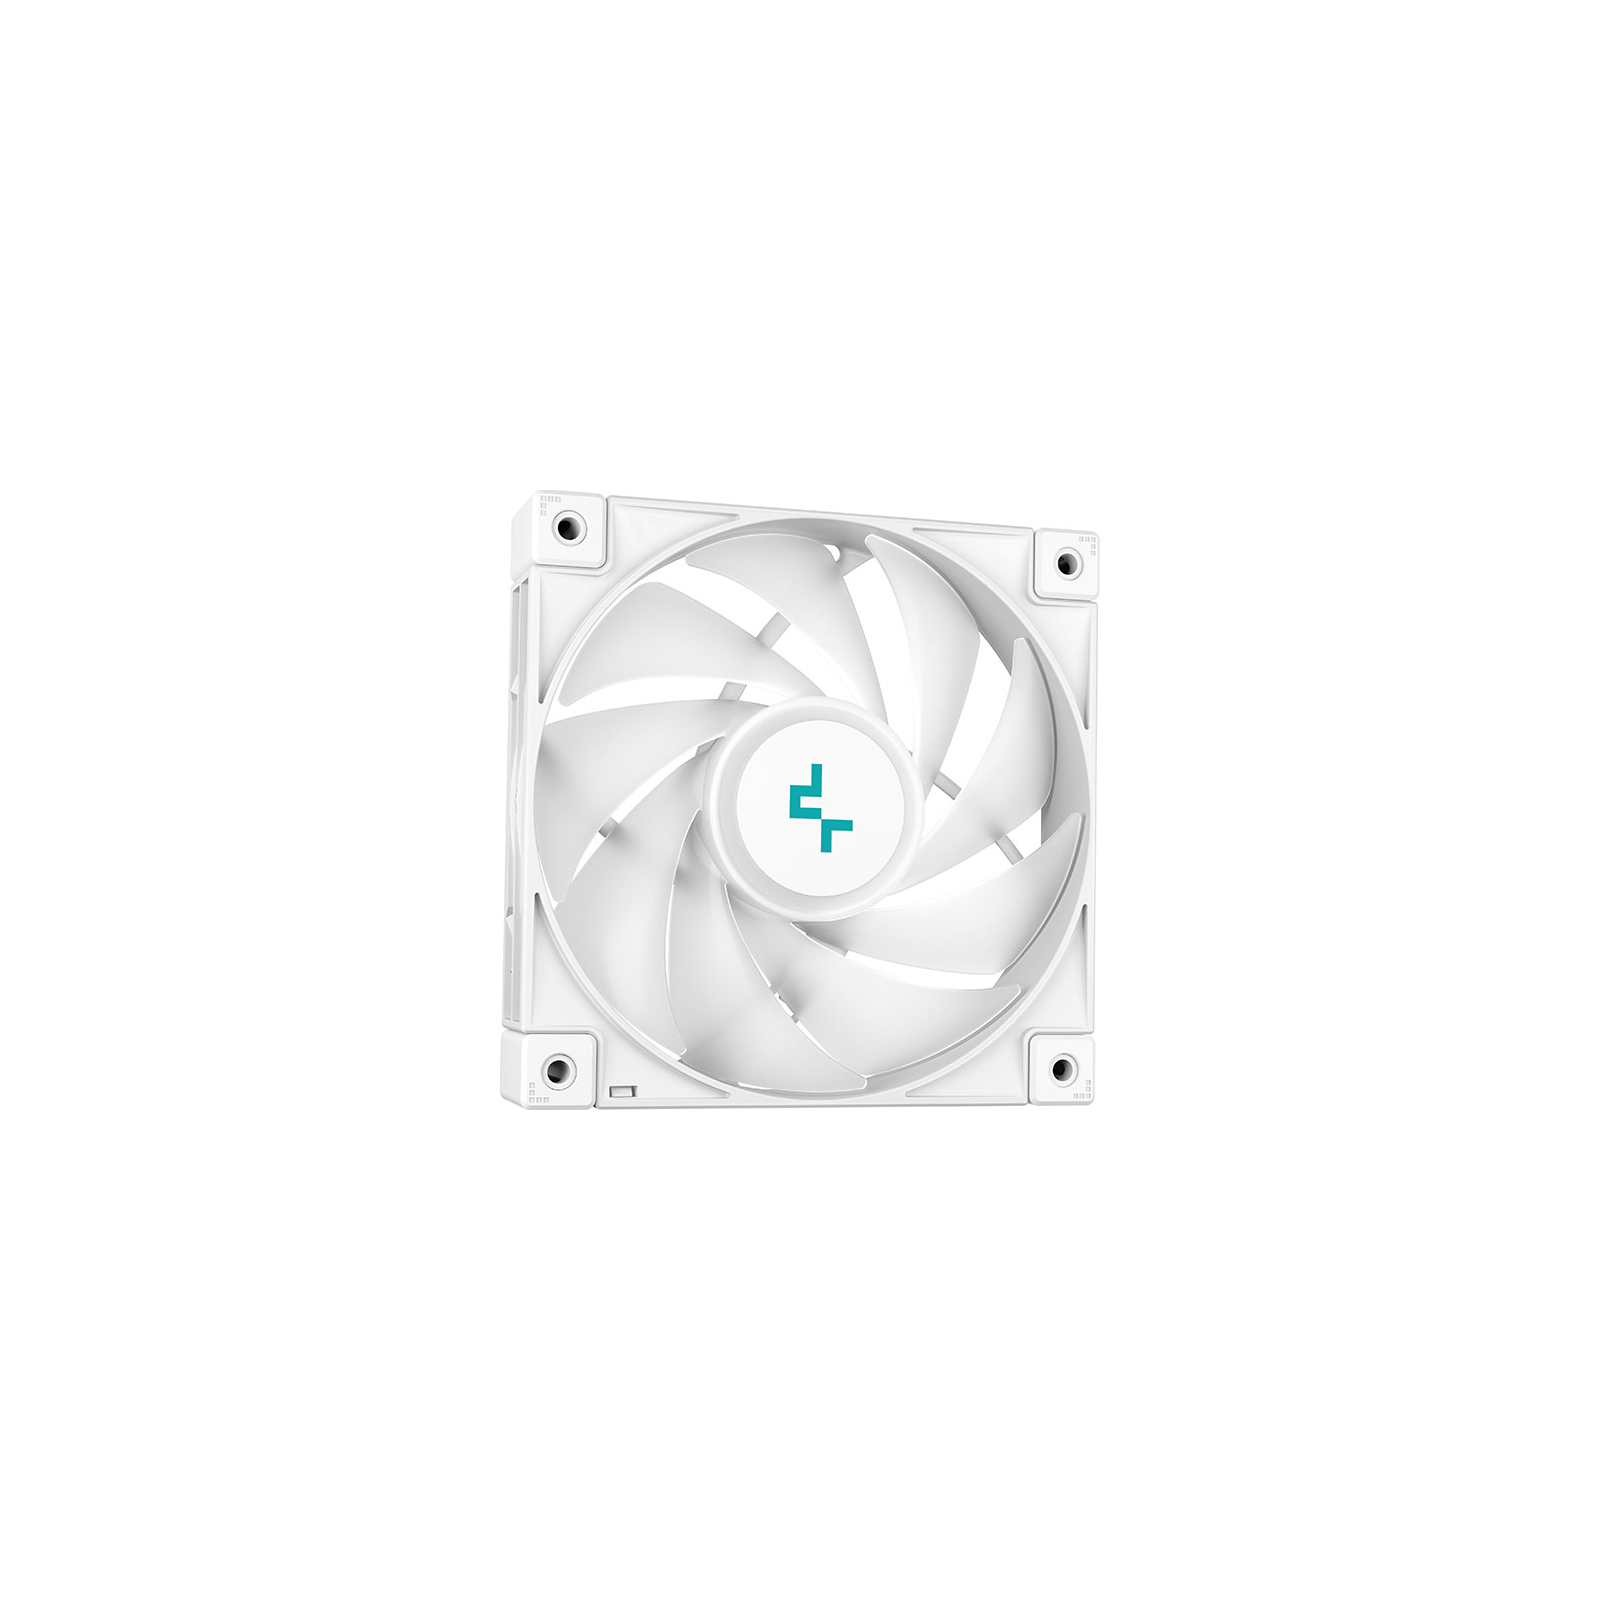 Система жидкостного охлаждения Deepcool LS520 White изображение 3